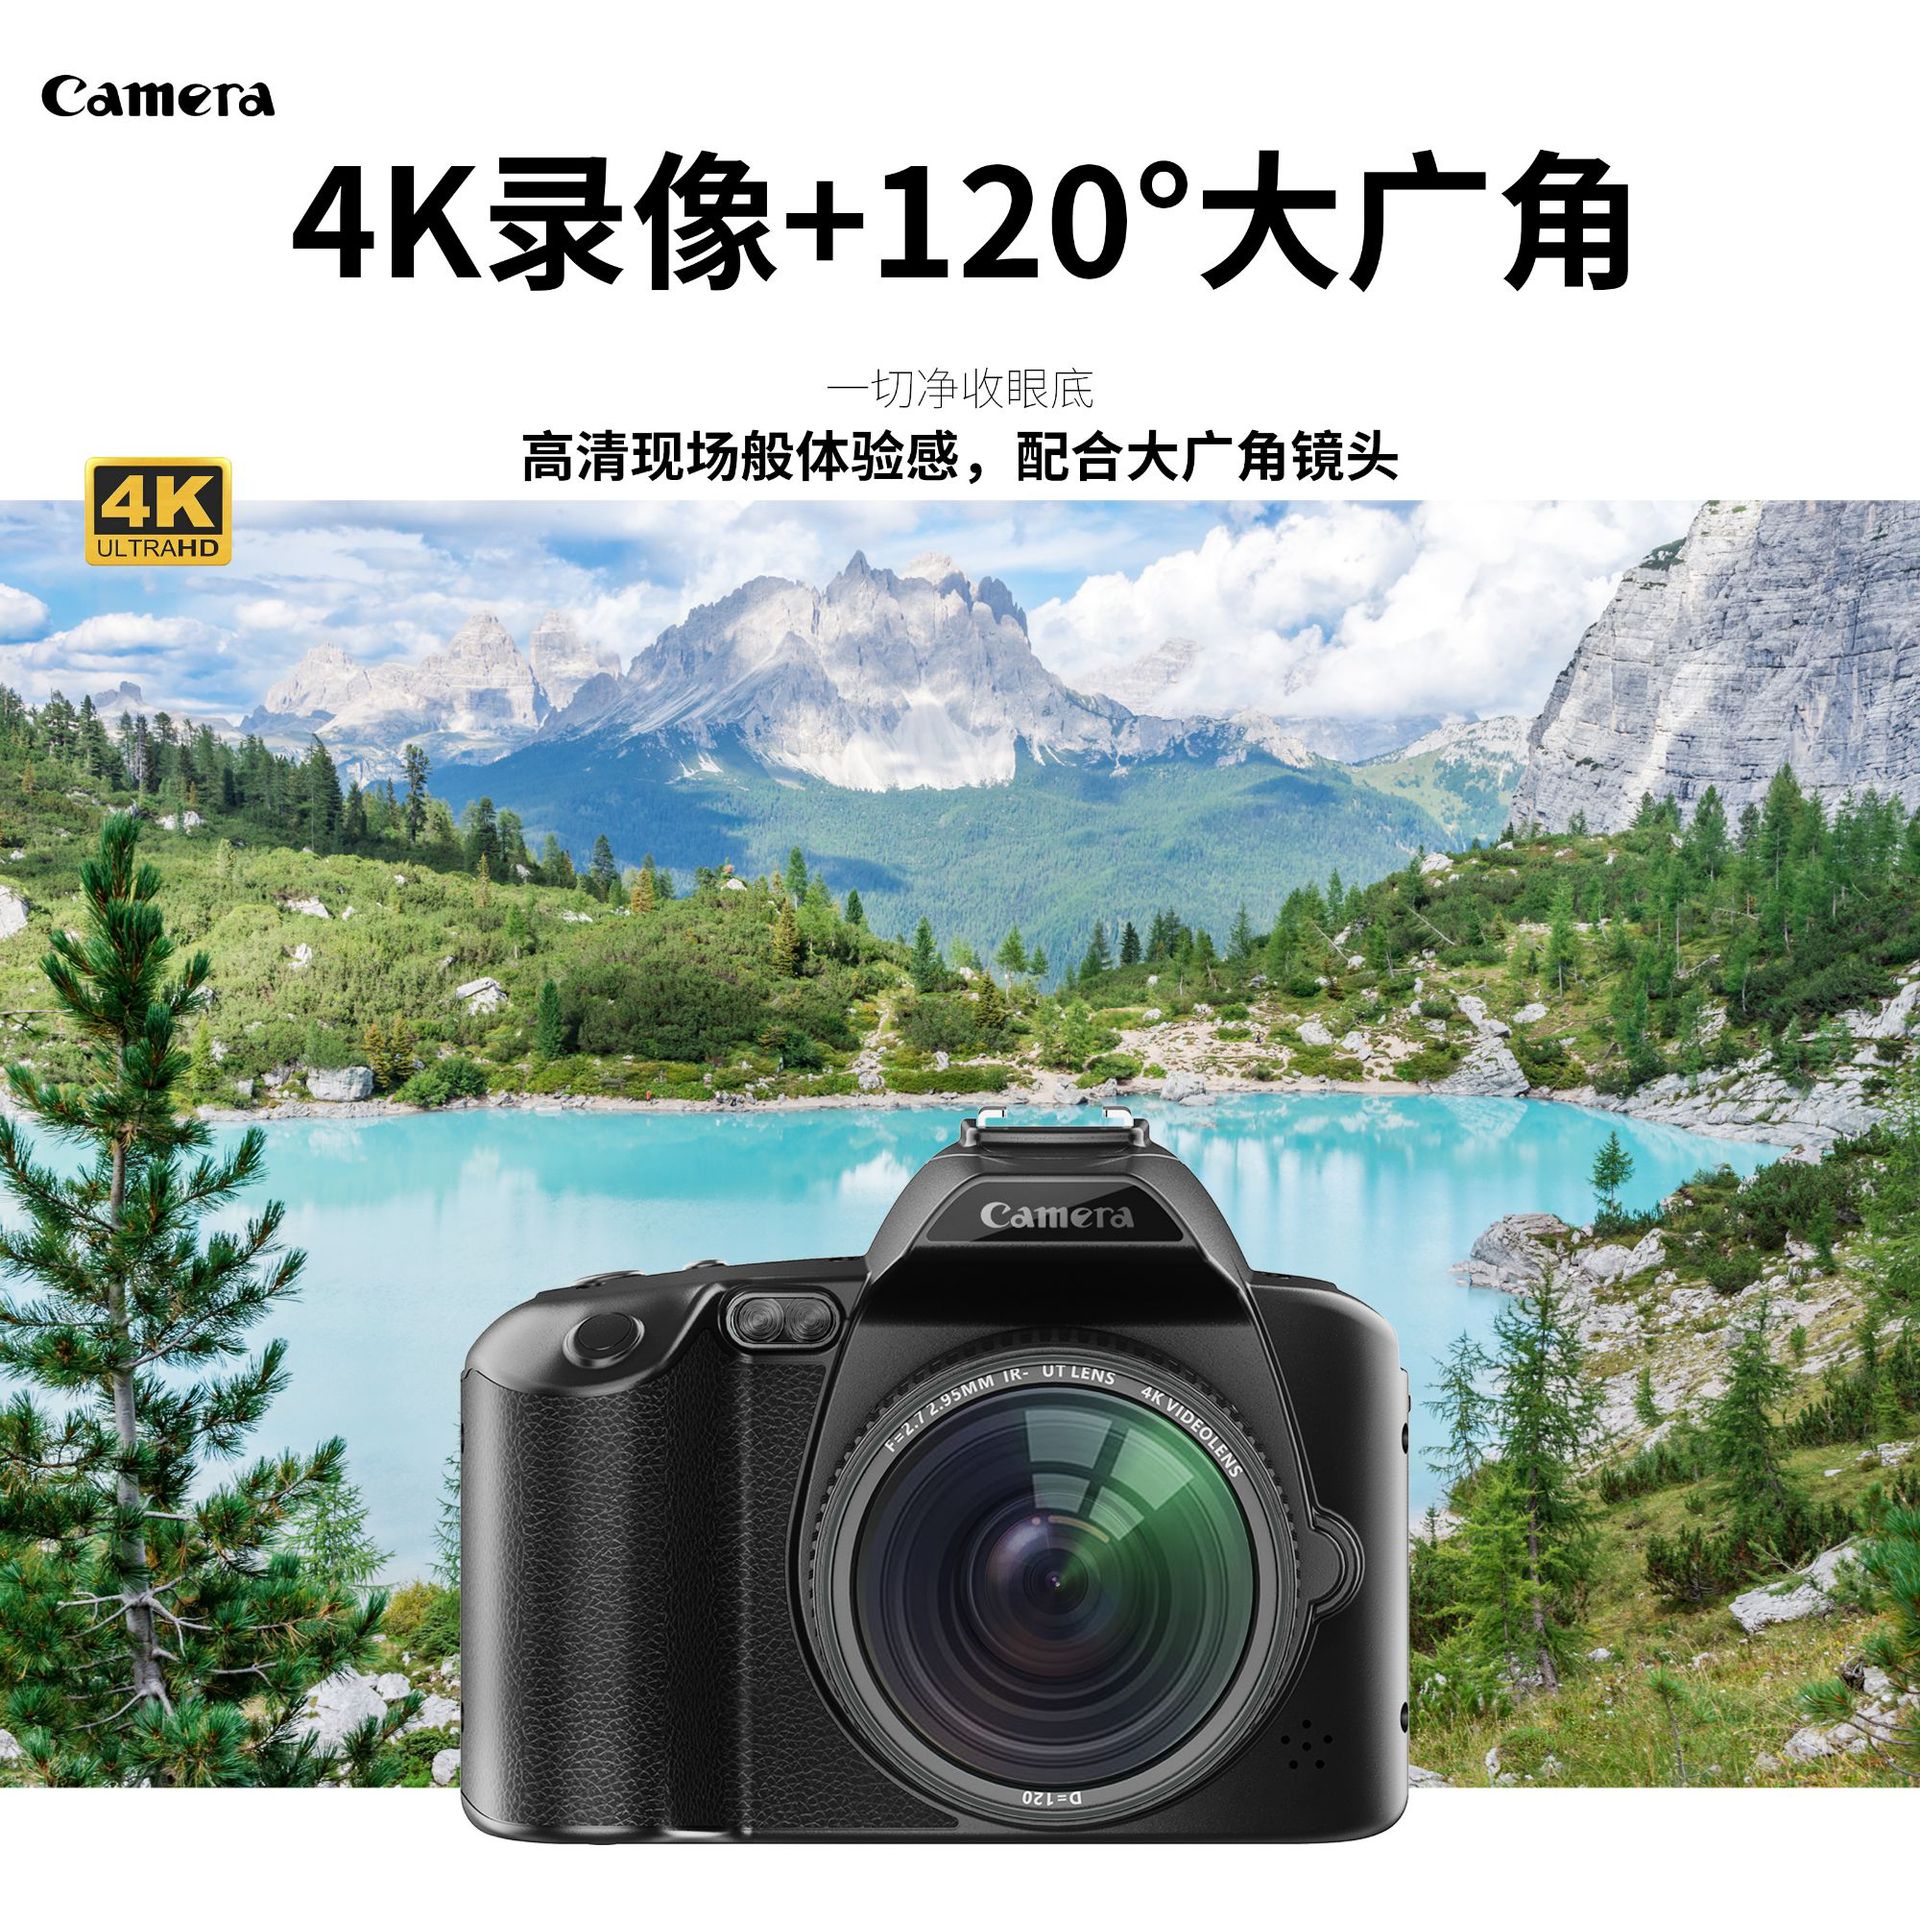 新品D5高清wifi单反相机4K双摄6400万美颜数码照录相机夜视摄像机